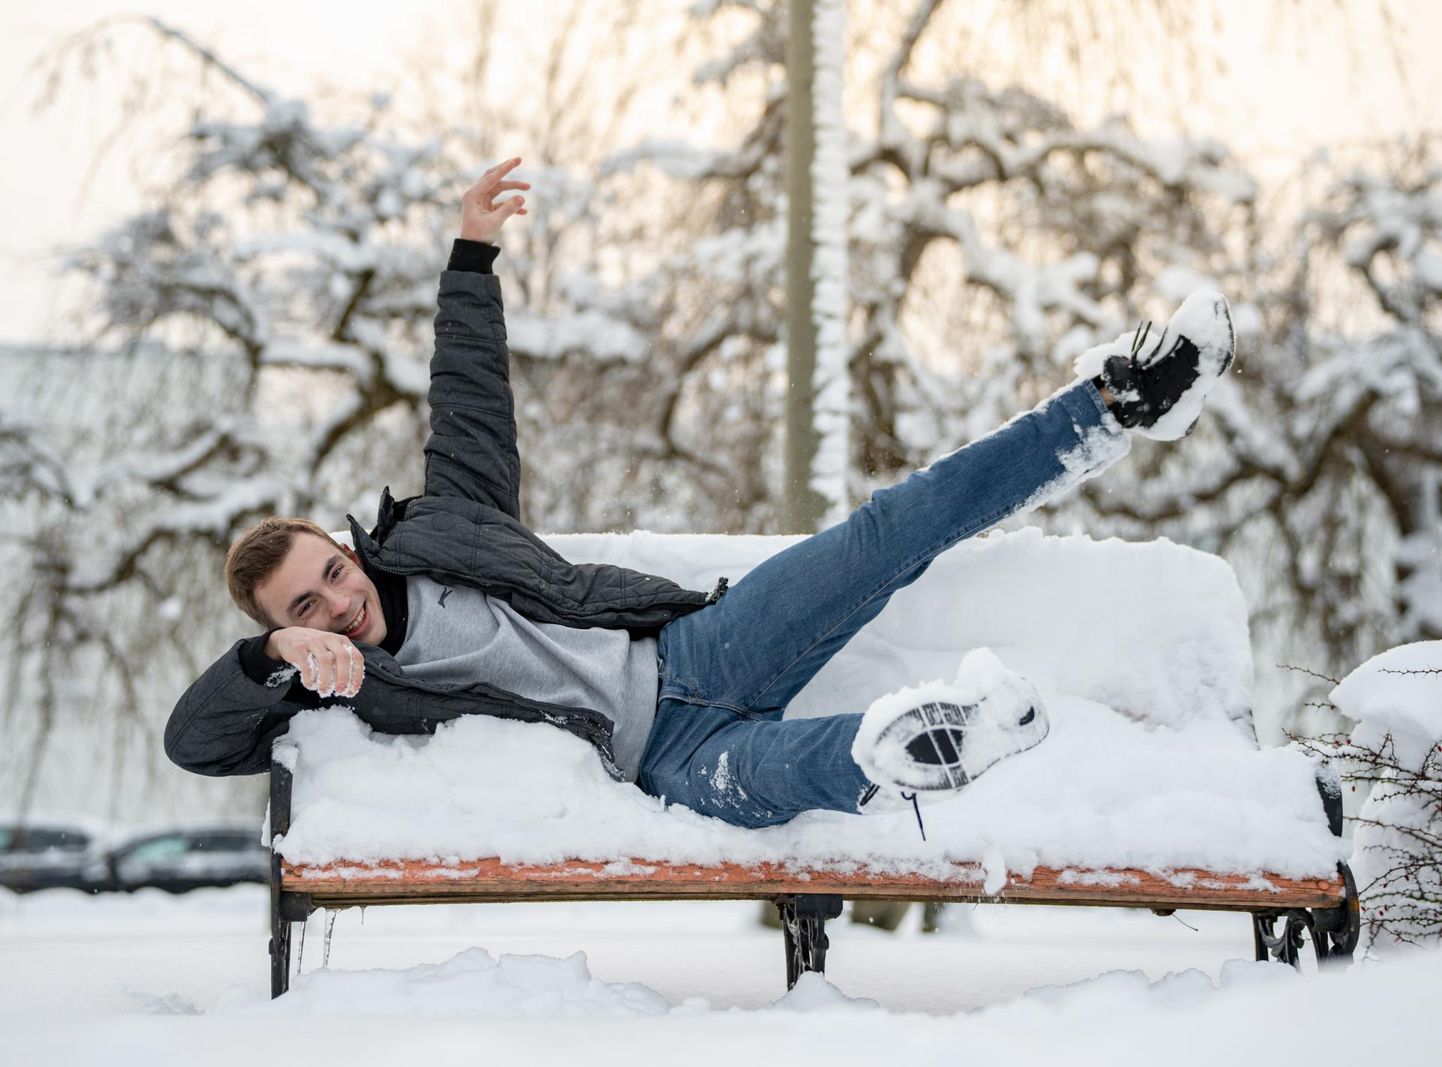 Одиннадцатиклассник Даниэль из Германии очень ждал снежной зимы.